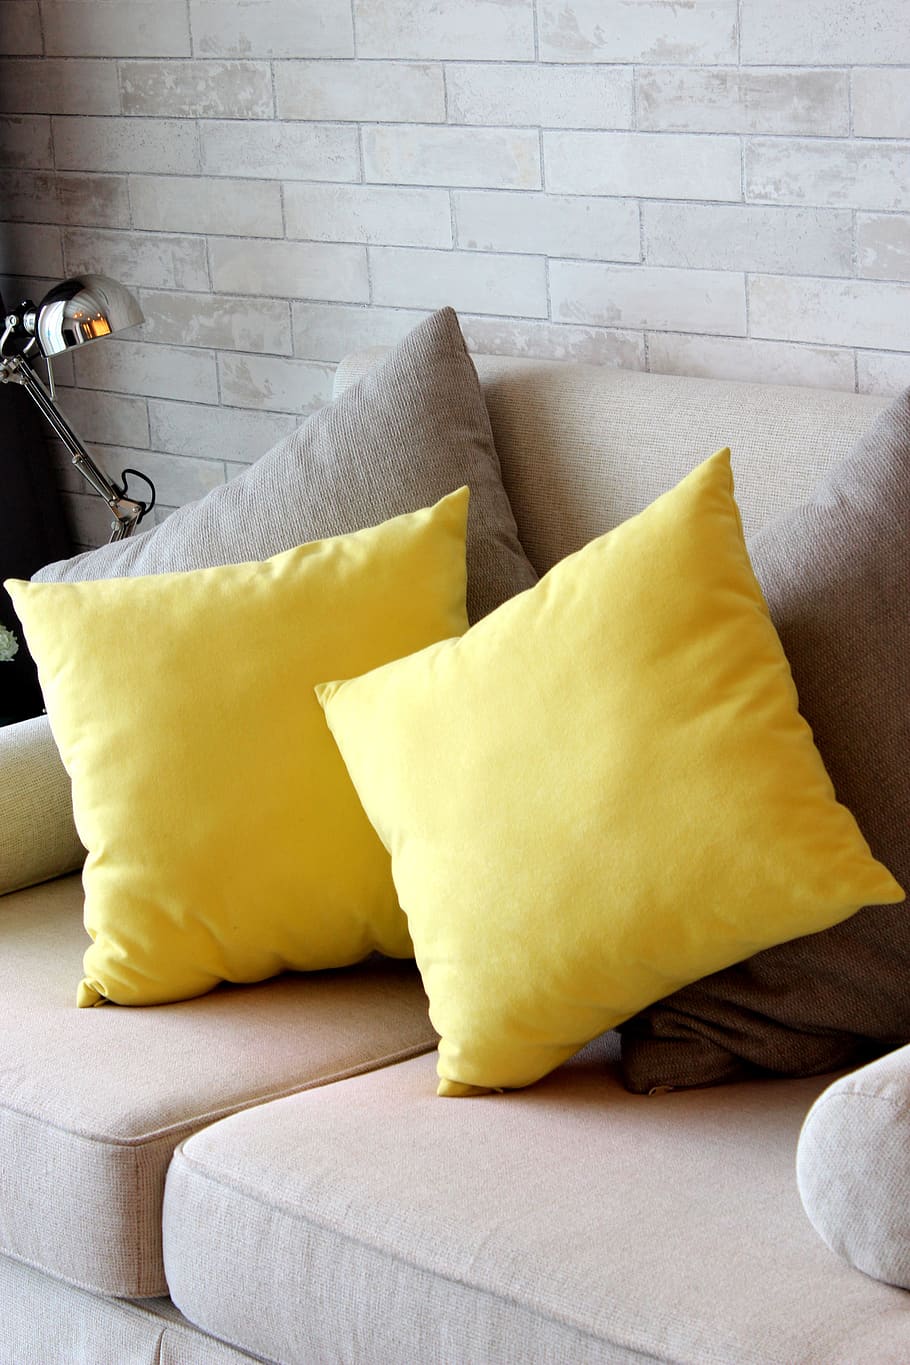 almohada, amarillo, sofá, para relajarse, el formato, cojín, confort, turismo, condominio, relajarse